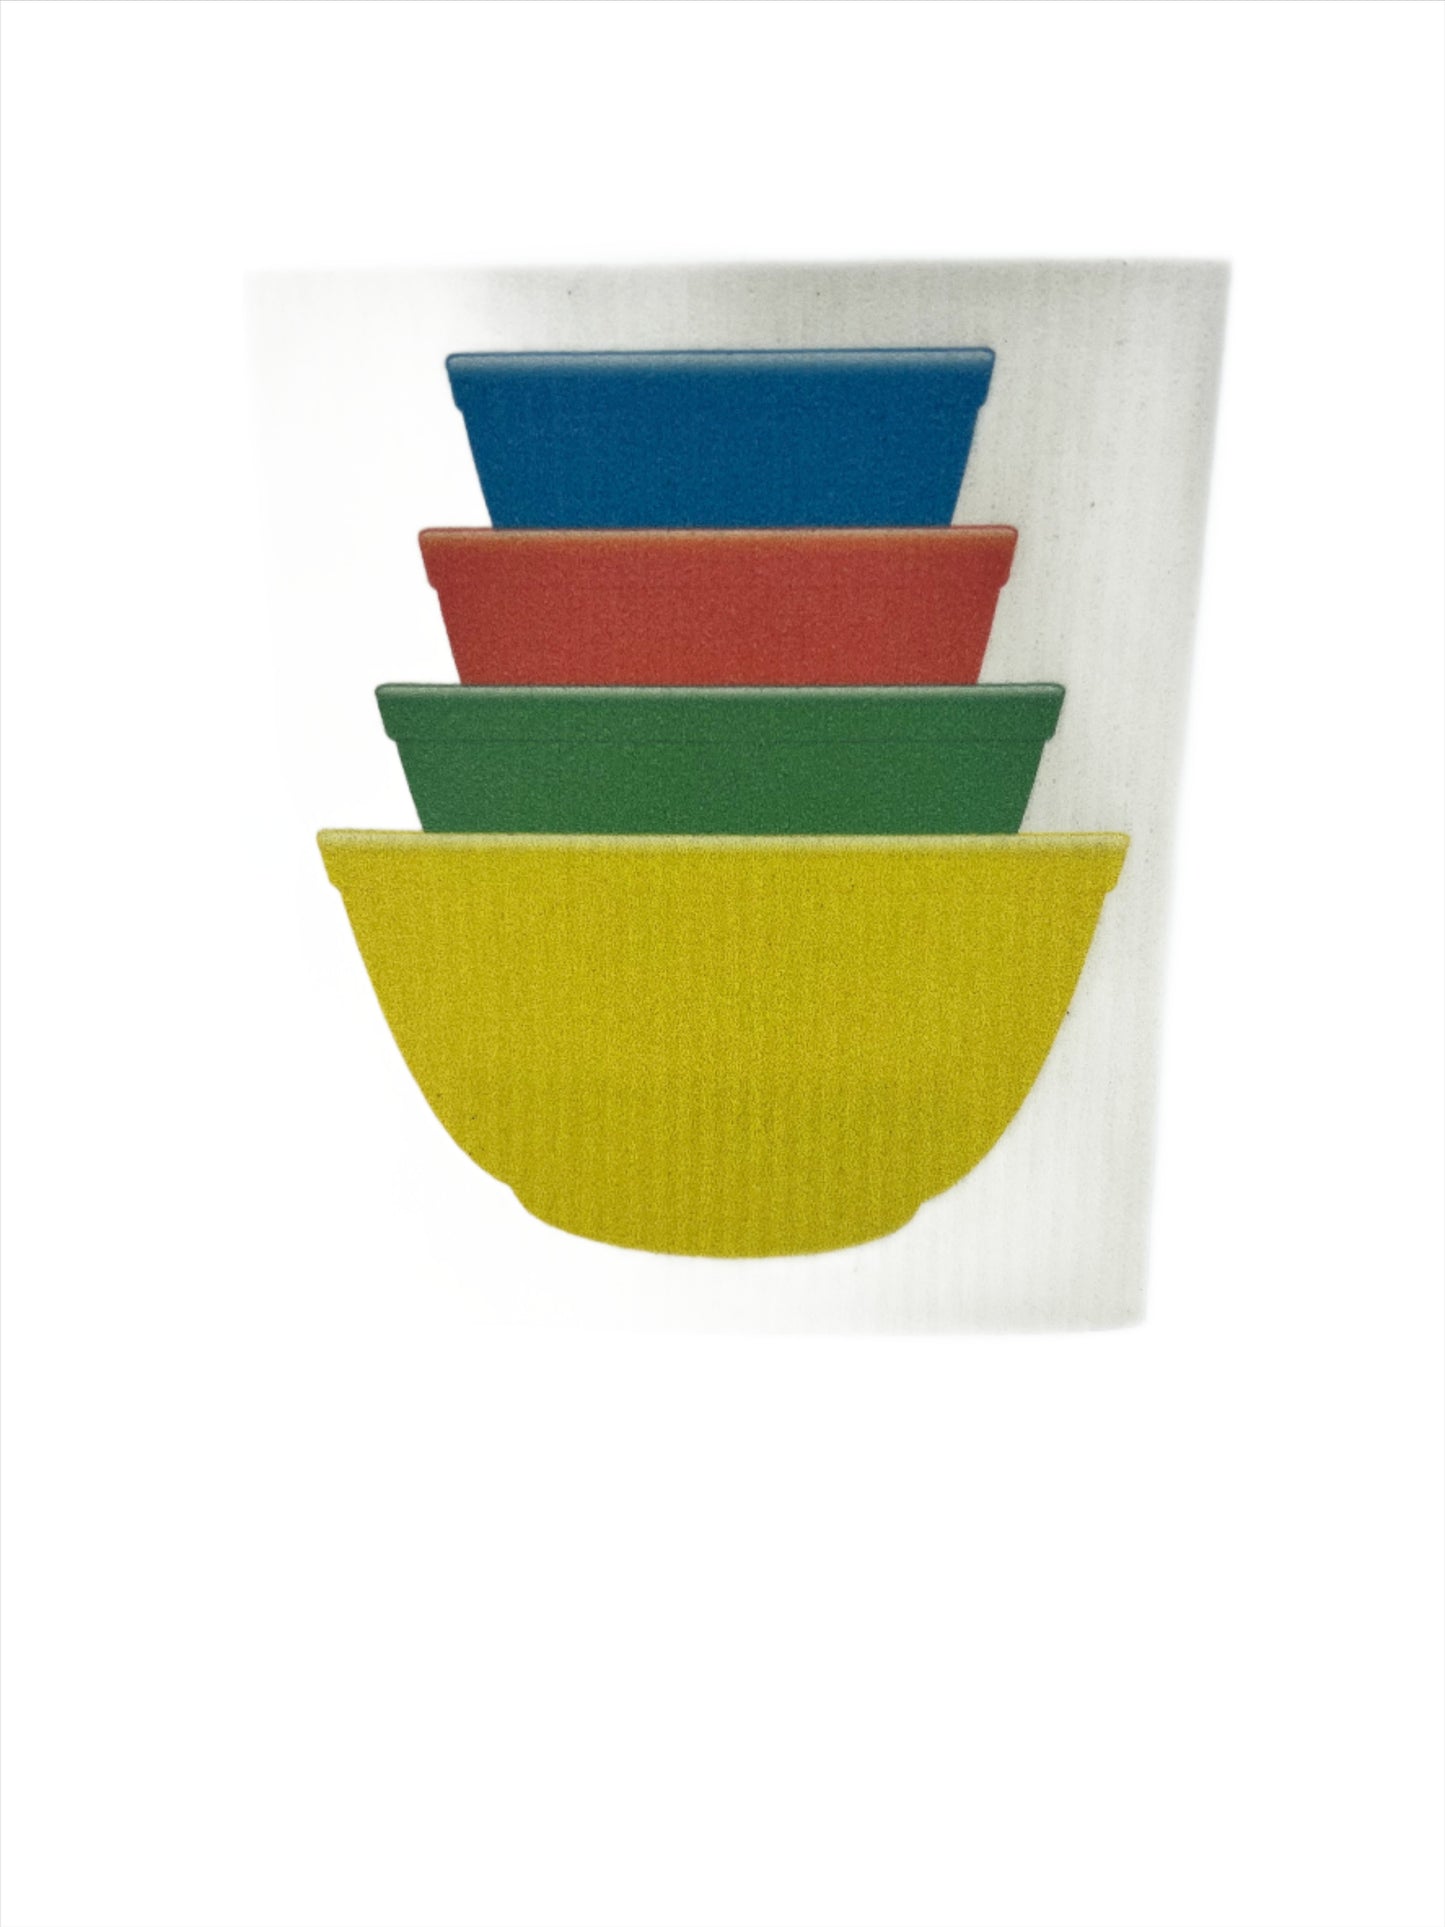 Corning Pyrex Primary Bowls Swedish Dishcloth